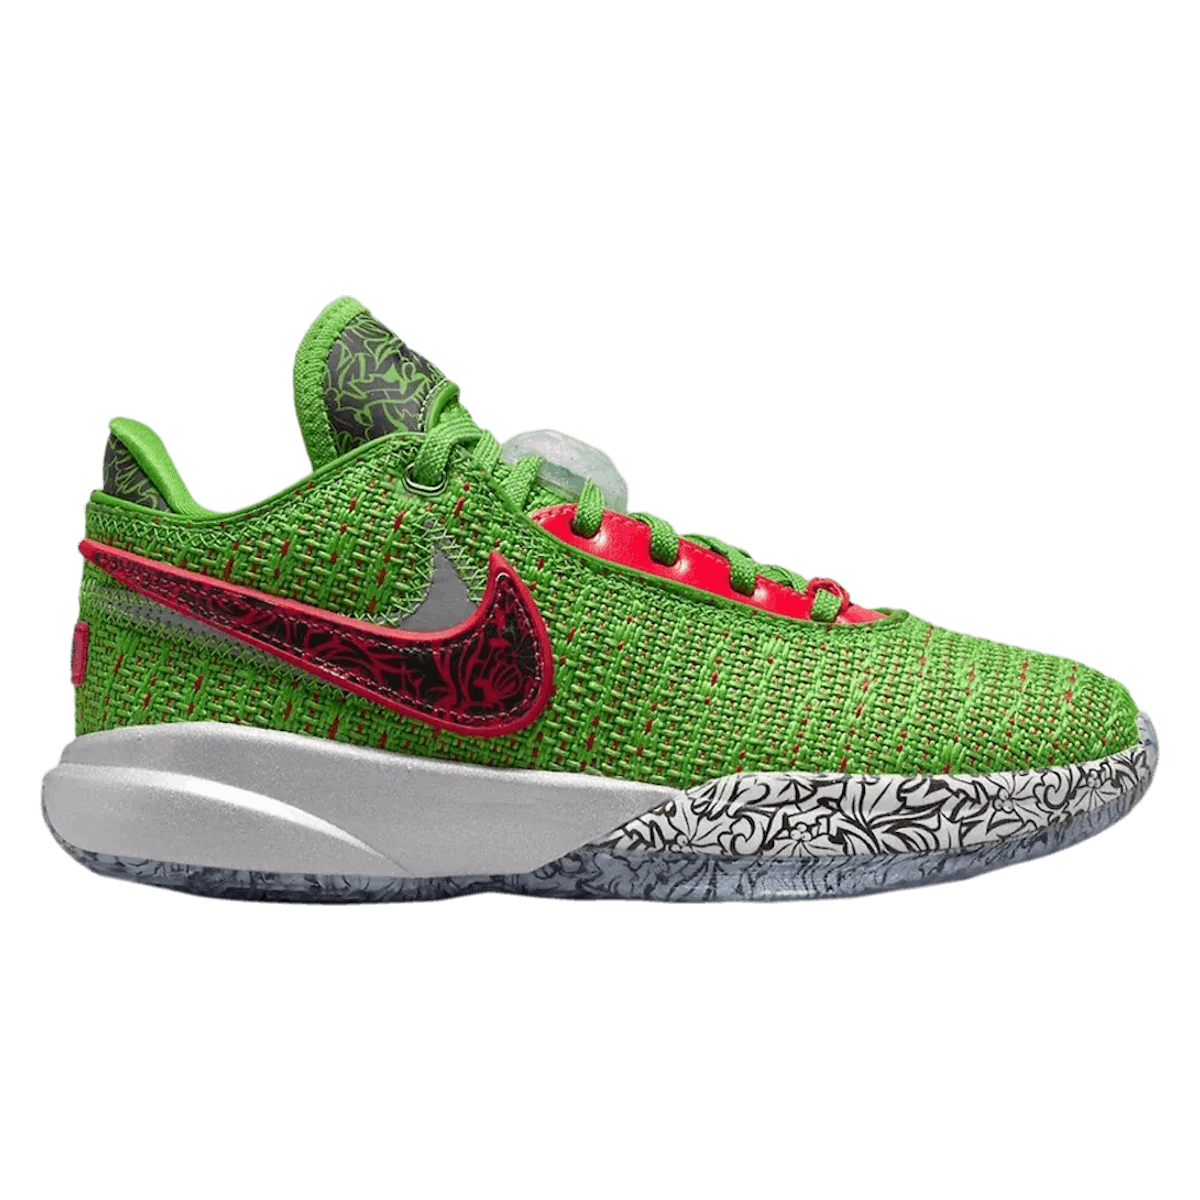 Nike LeBron 20 GS "Christmas"